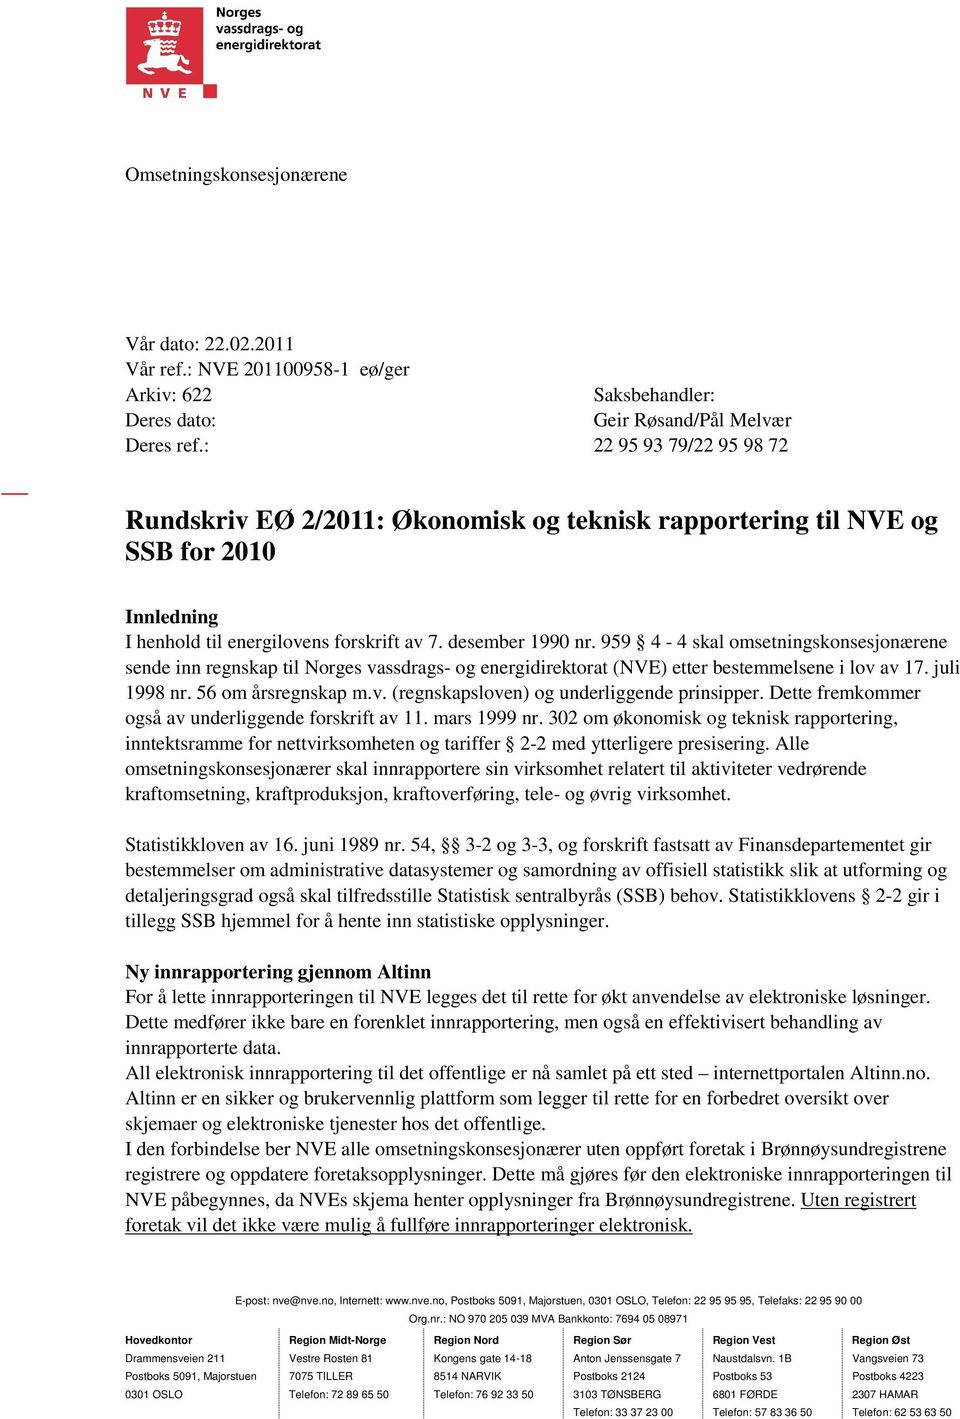 959 4-4 skal omsetningskonsesjonærene sende inn regnskap til Norges vassdrags- og energidirektorat (NVE) etter bestemmelsene i lov av 17. juli 1998 nr. 56 om årsregnskap m.v. (regnskapsloven) og underliggende prinsipper.